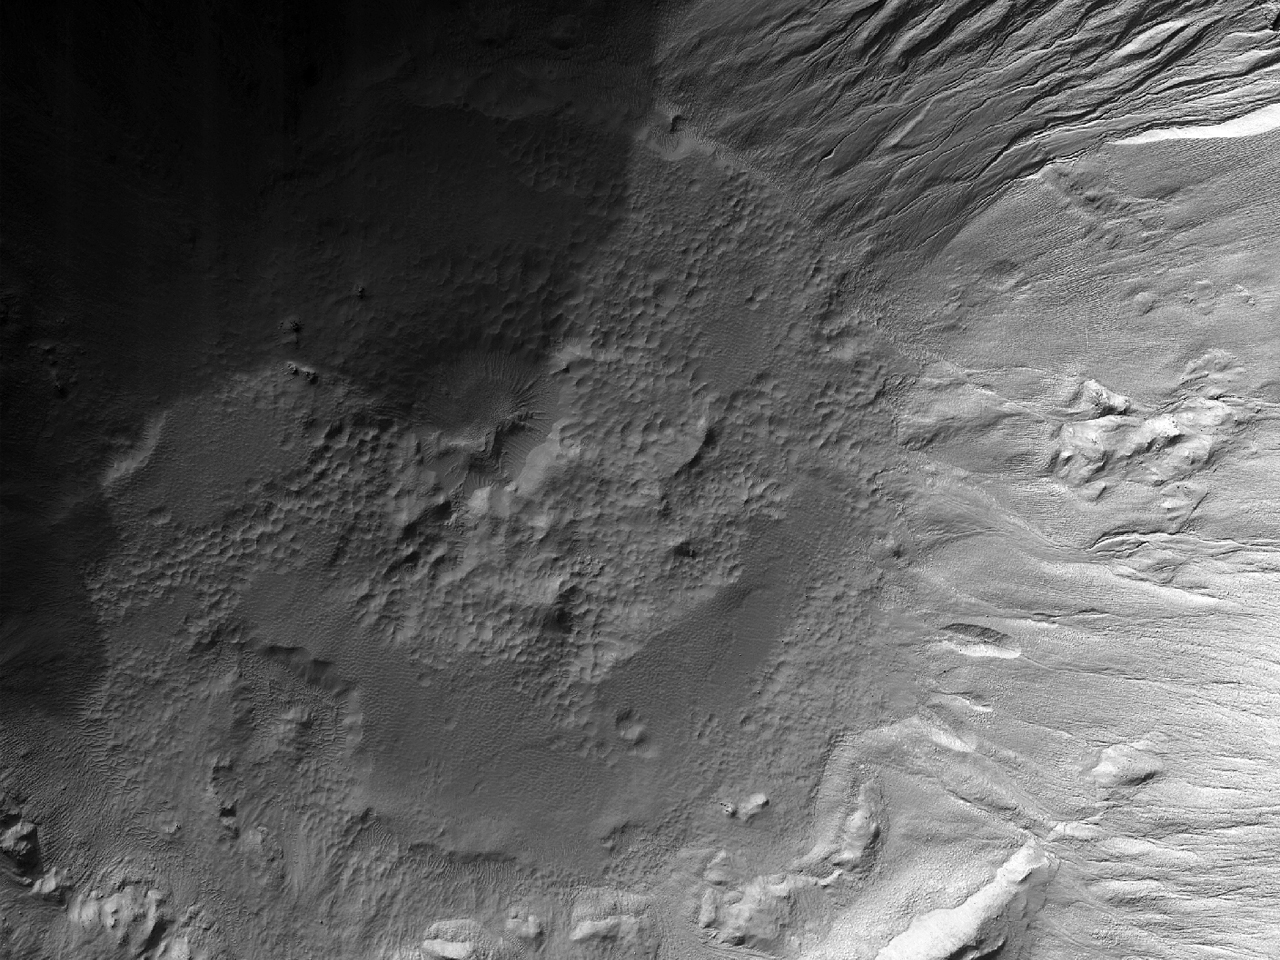 8 kilometrelik bir çapa sahip kraterin iç kısmında bulunan çukurlaşmış maddeler